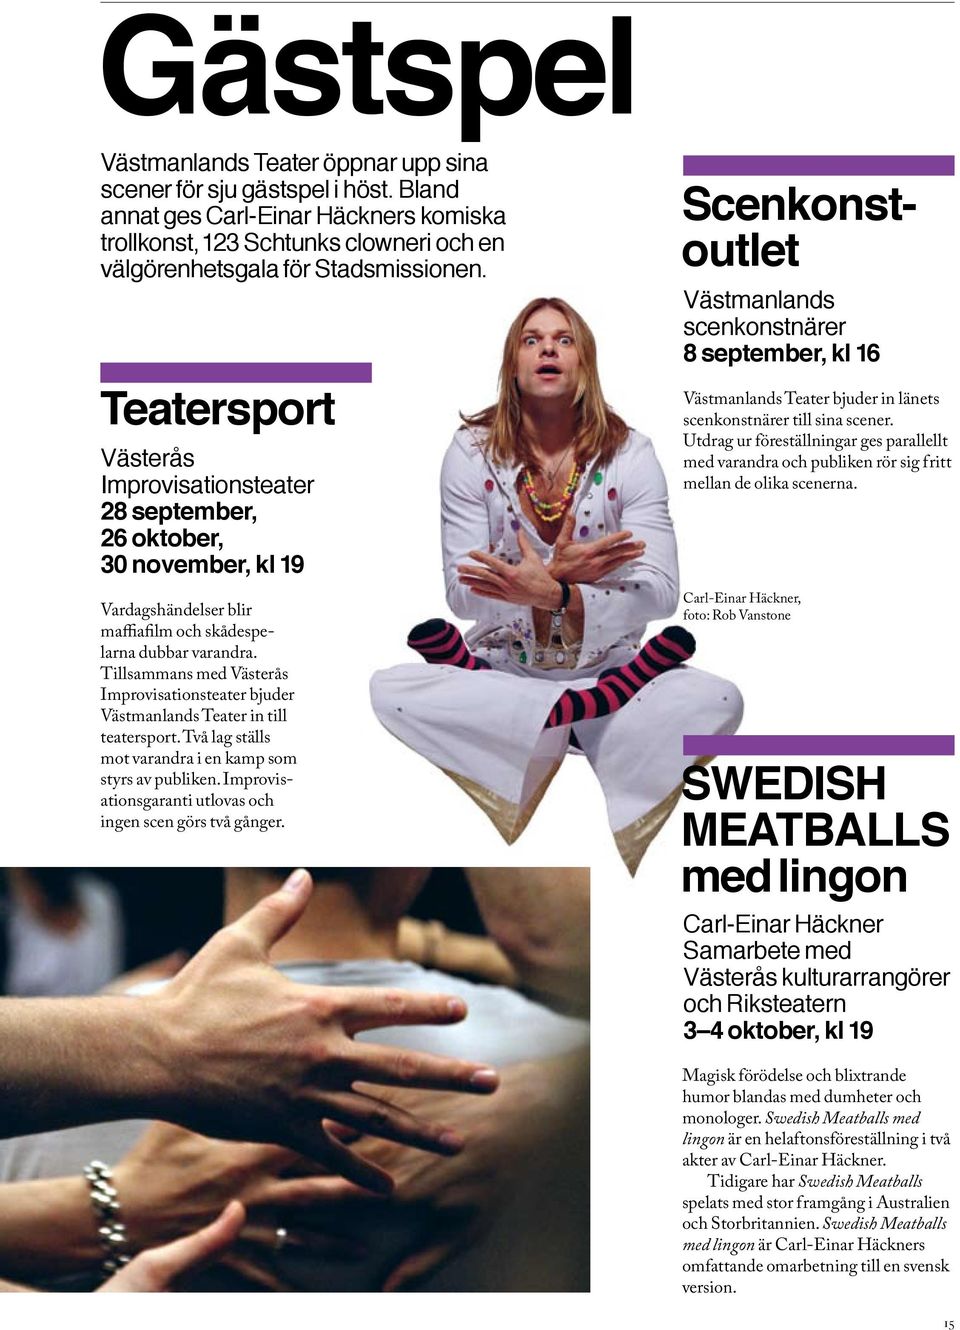 Tillsammans med Västerås Improvisationsteater bjuder Västmanlands Teater in till teatersport. Två lag ställs mot varandra i en kamp som styrs av publiken.